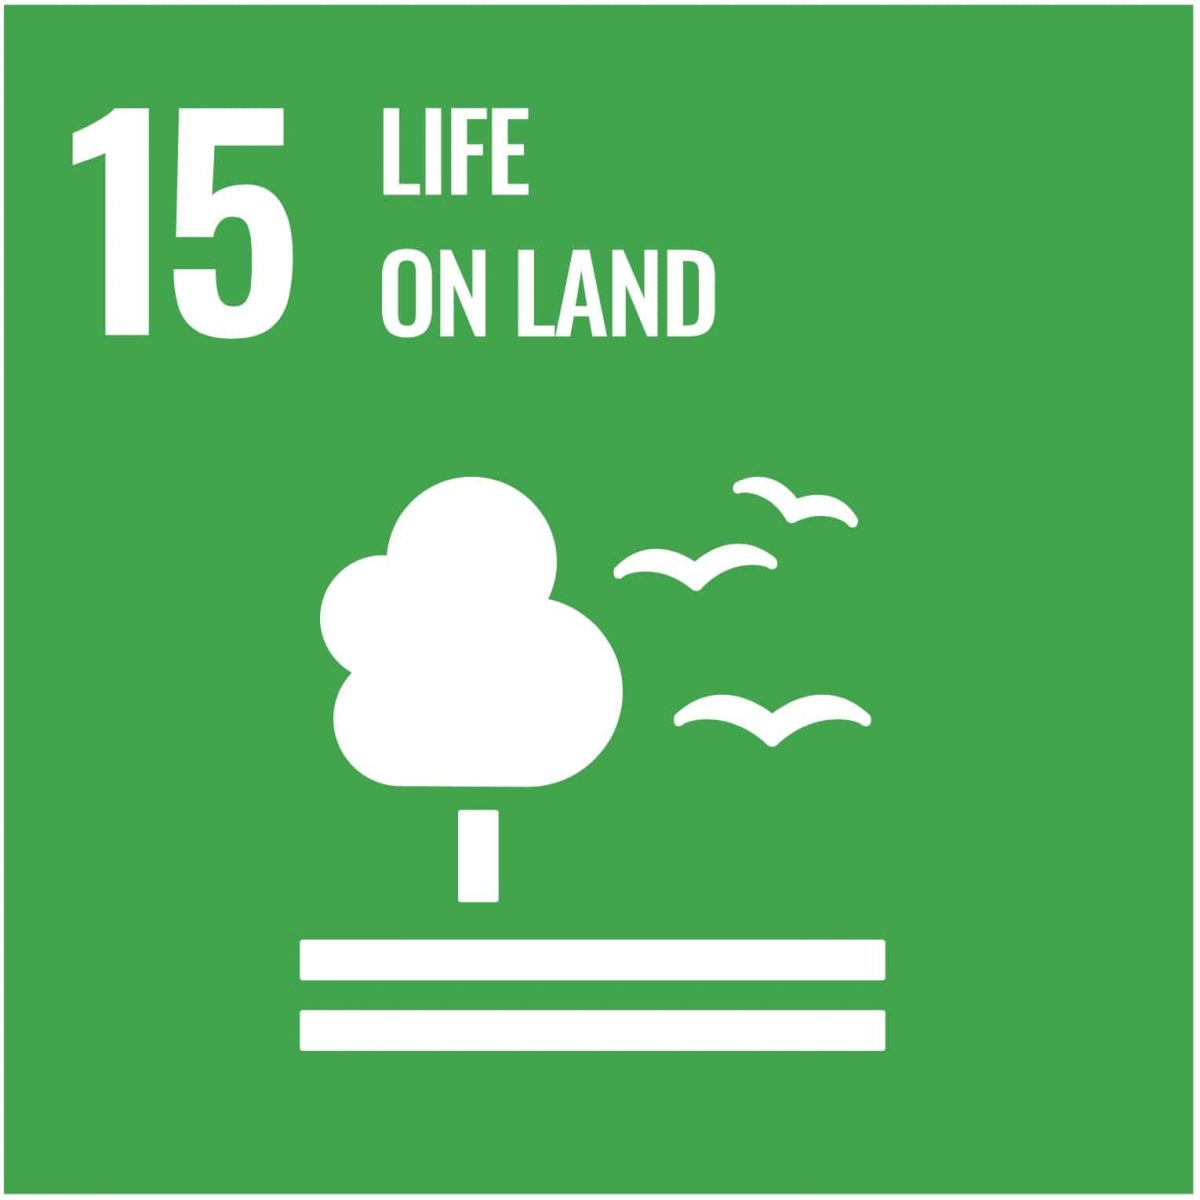 UN-Development-Goal-15-life-on-land-min-sustainable-goals